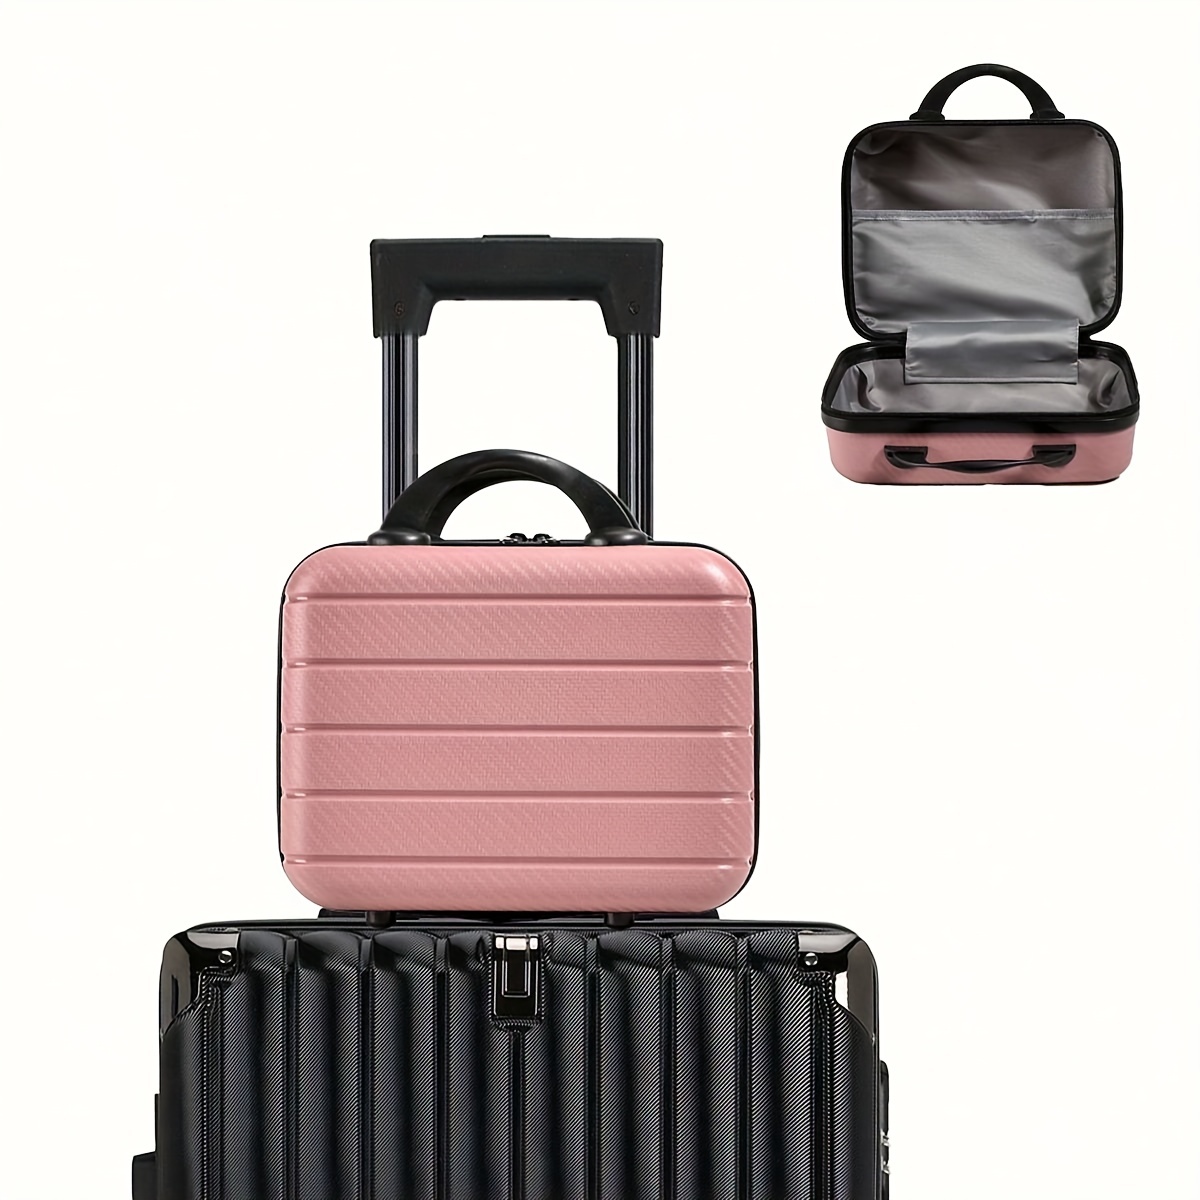 Nuova valigia in pelle pu set valigia da viaggio moda donna con